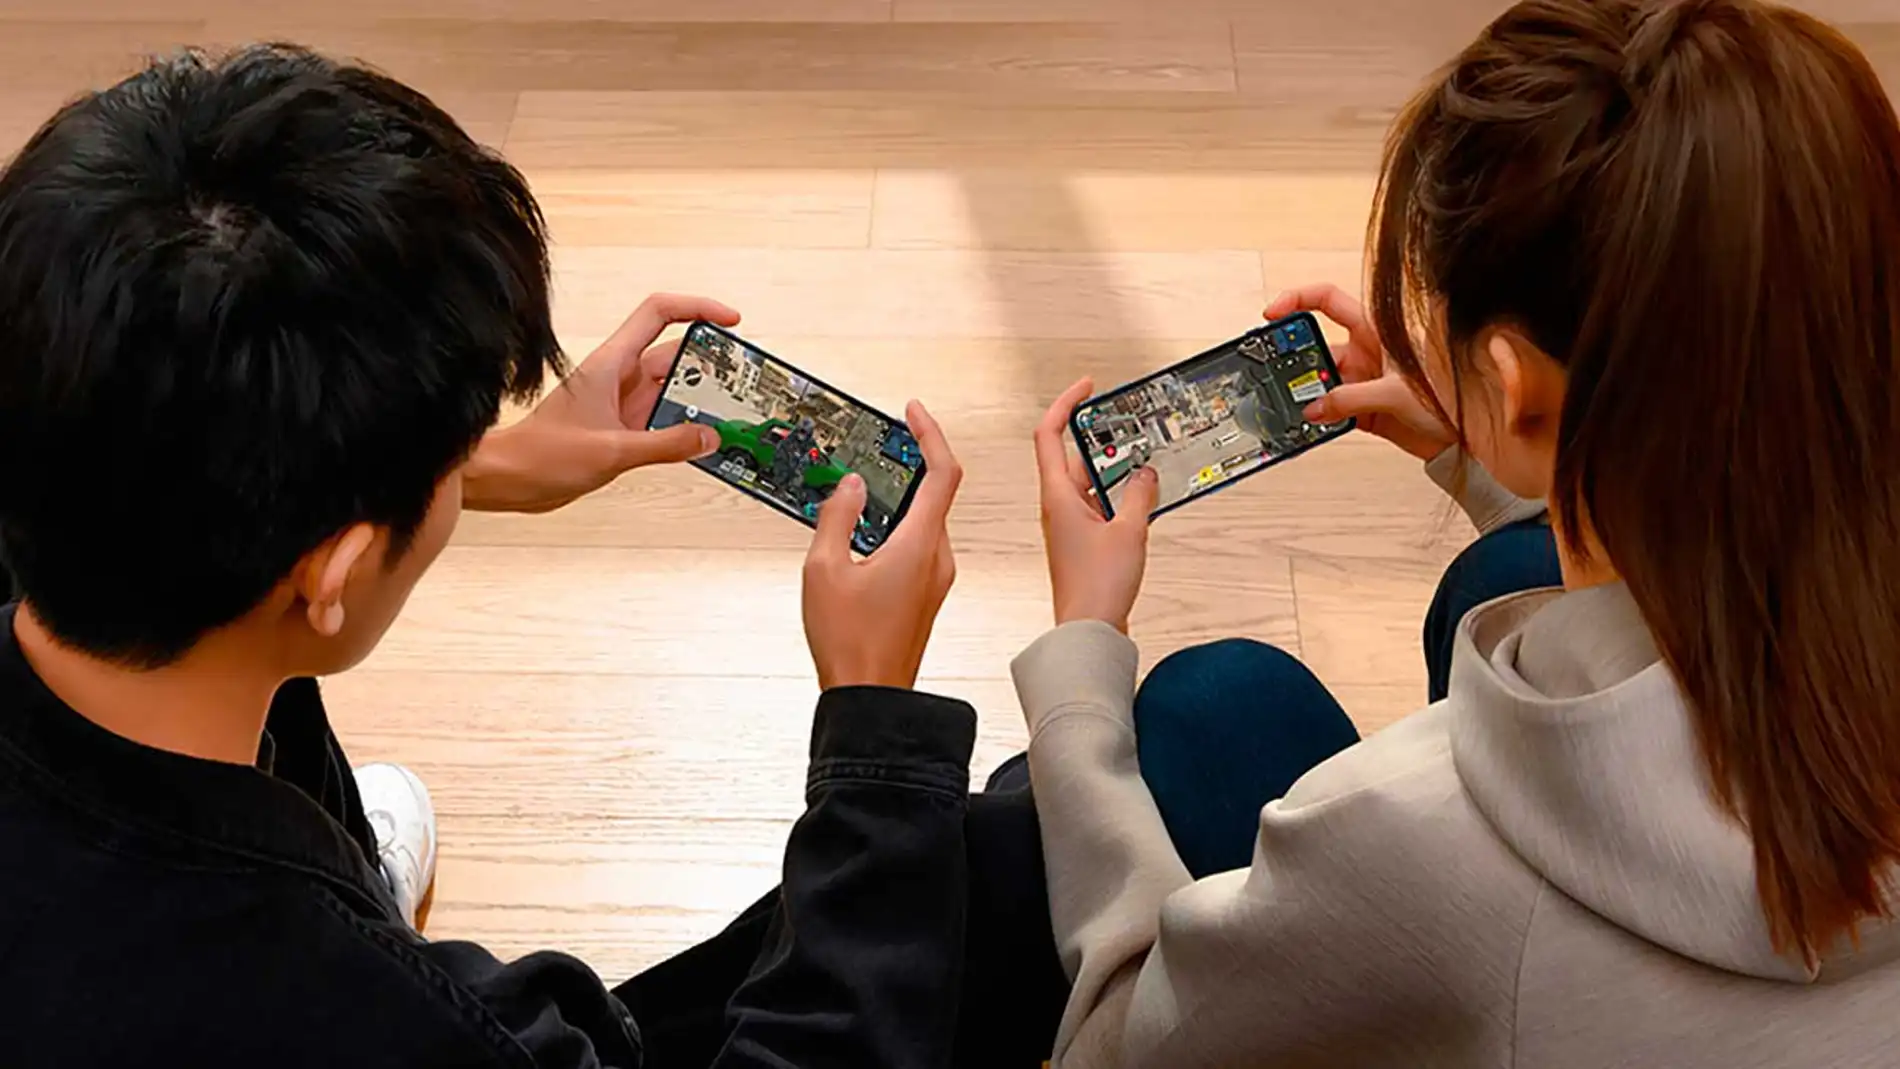 Xiaomi ya tiene su smartphone para gamers, se llama Black Shark y cuenta  con pantalla de